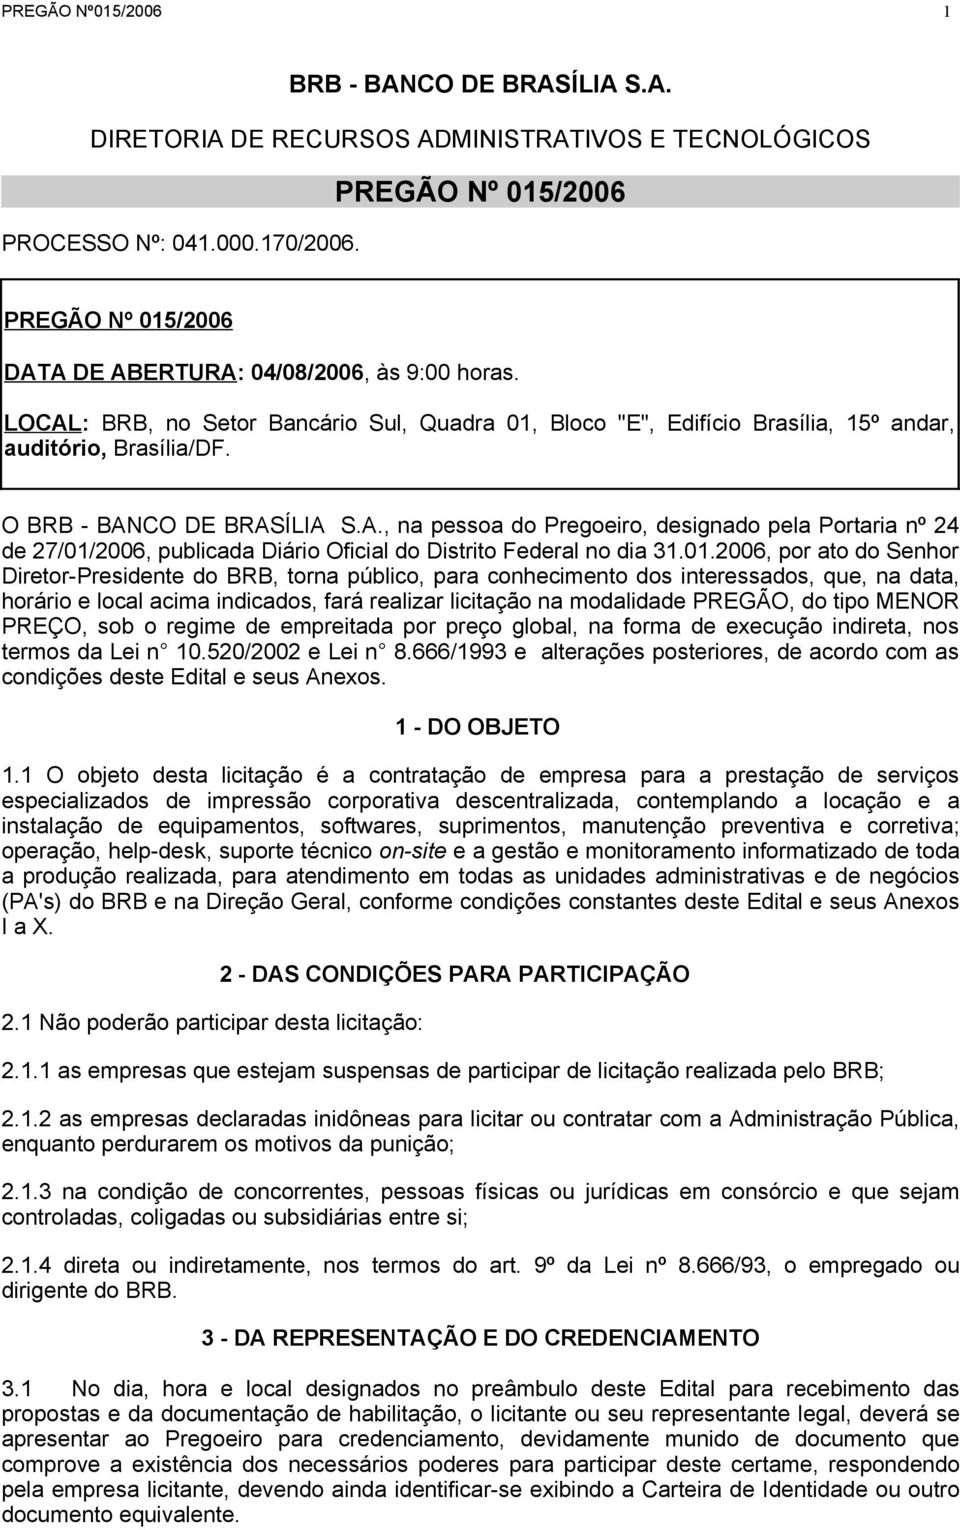 O BRB - BANCO DE BRASÍLIA S.A., na pessoa do Pregoeiro, designado pela Portaria nº 24 de 27/01/